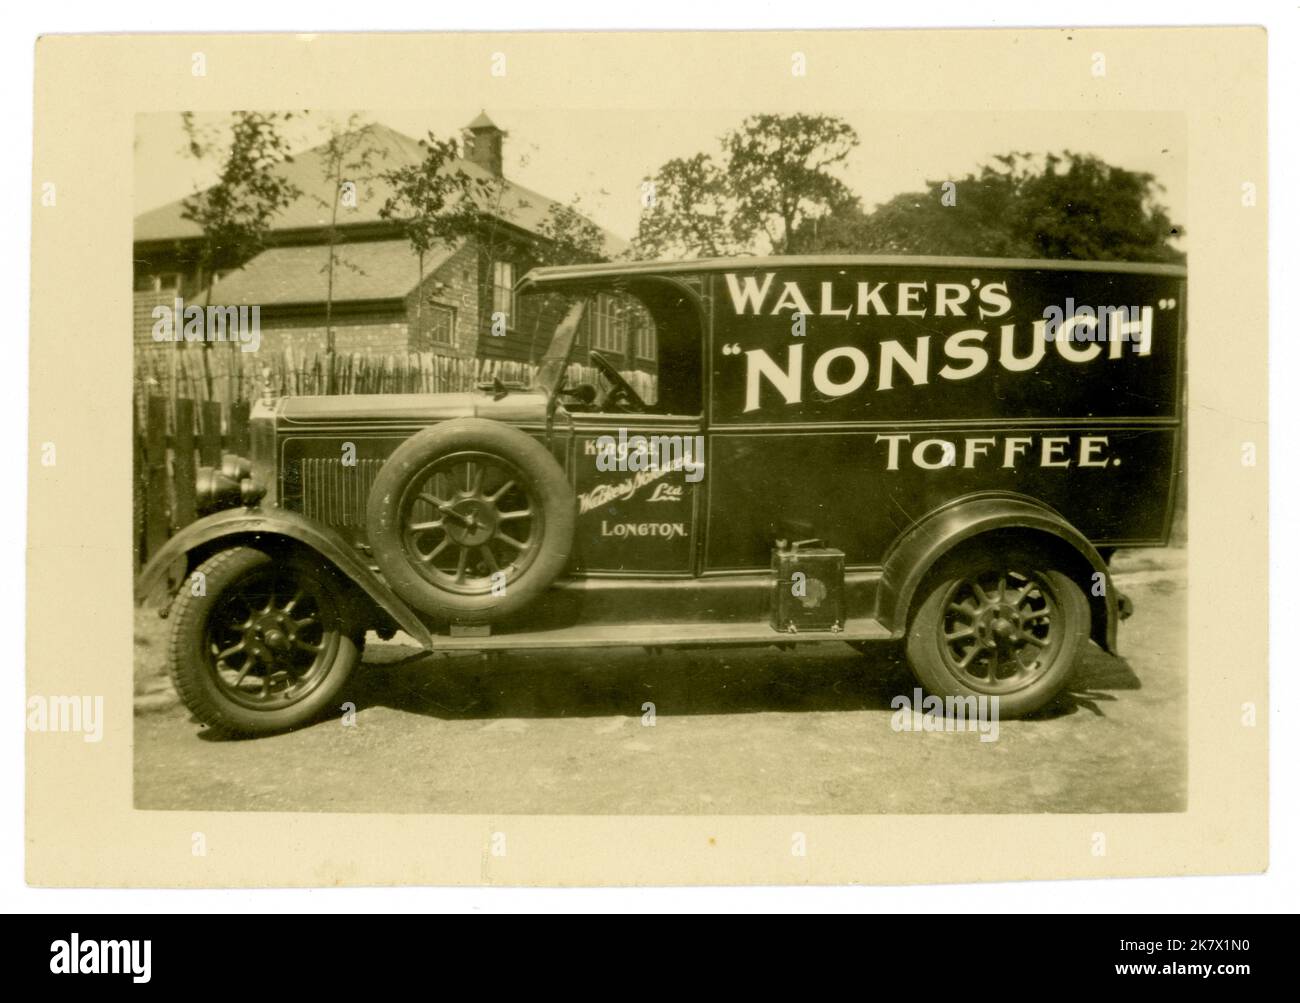 La photographie originale de la carte postale de l'époque des années 1920 du camion de livraison de Walker's Nonsuch Toffee, publicité de Walkers Nonsuch Toffee Ltd, date vers 1925. Longton, Stoke on Trent, Royaume-Uni Banque D'Images